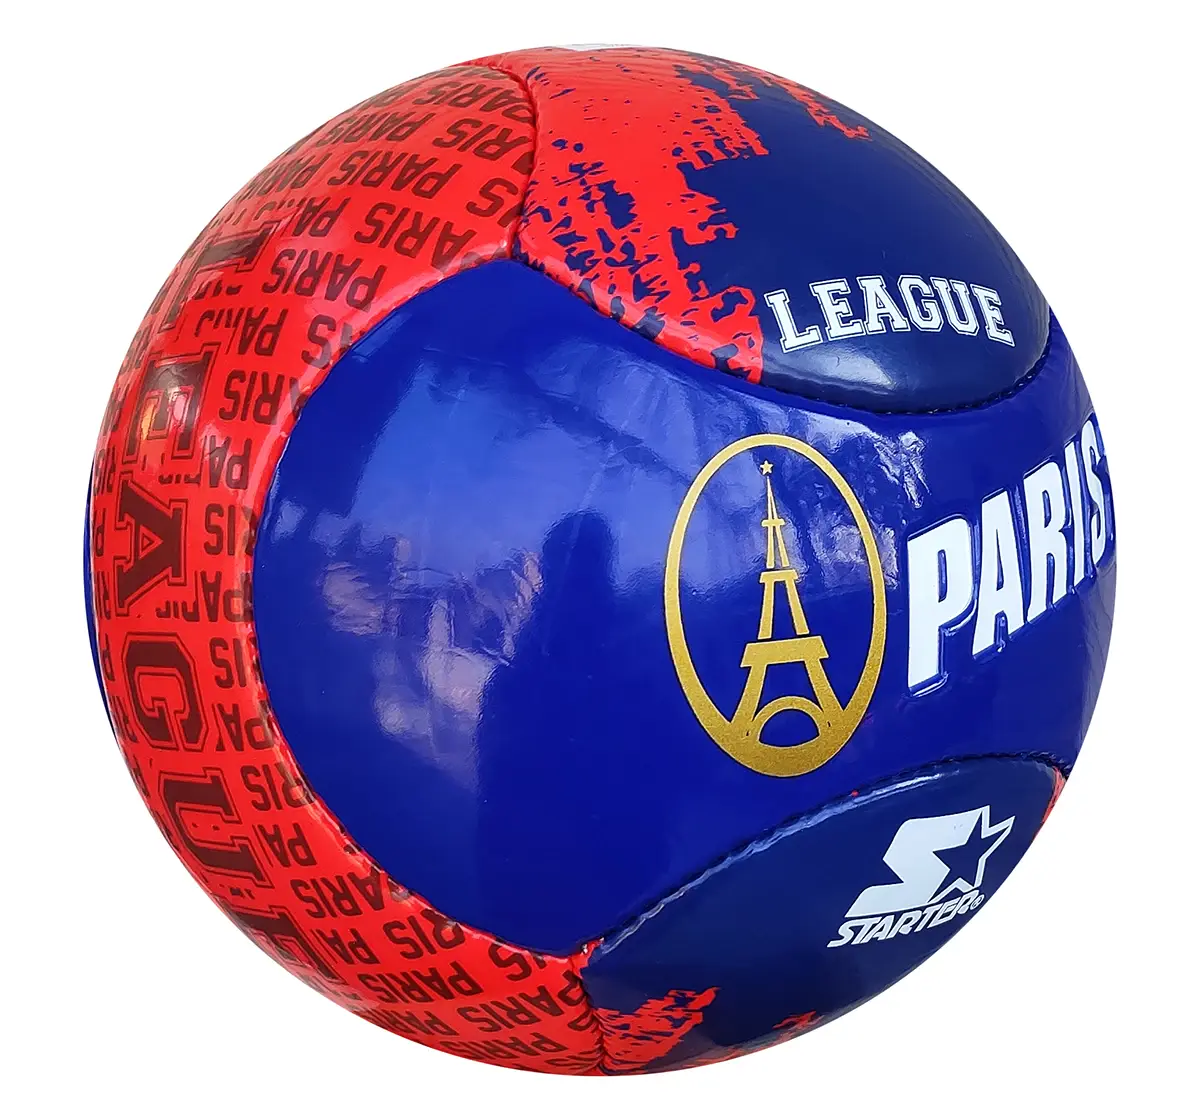 Starter Football Size 5 Paris Multicolor 8Y+